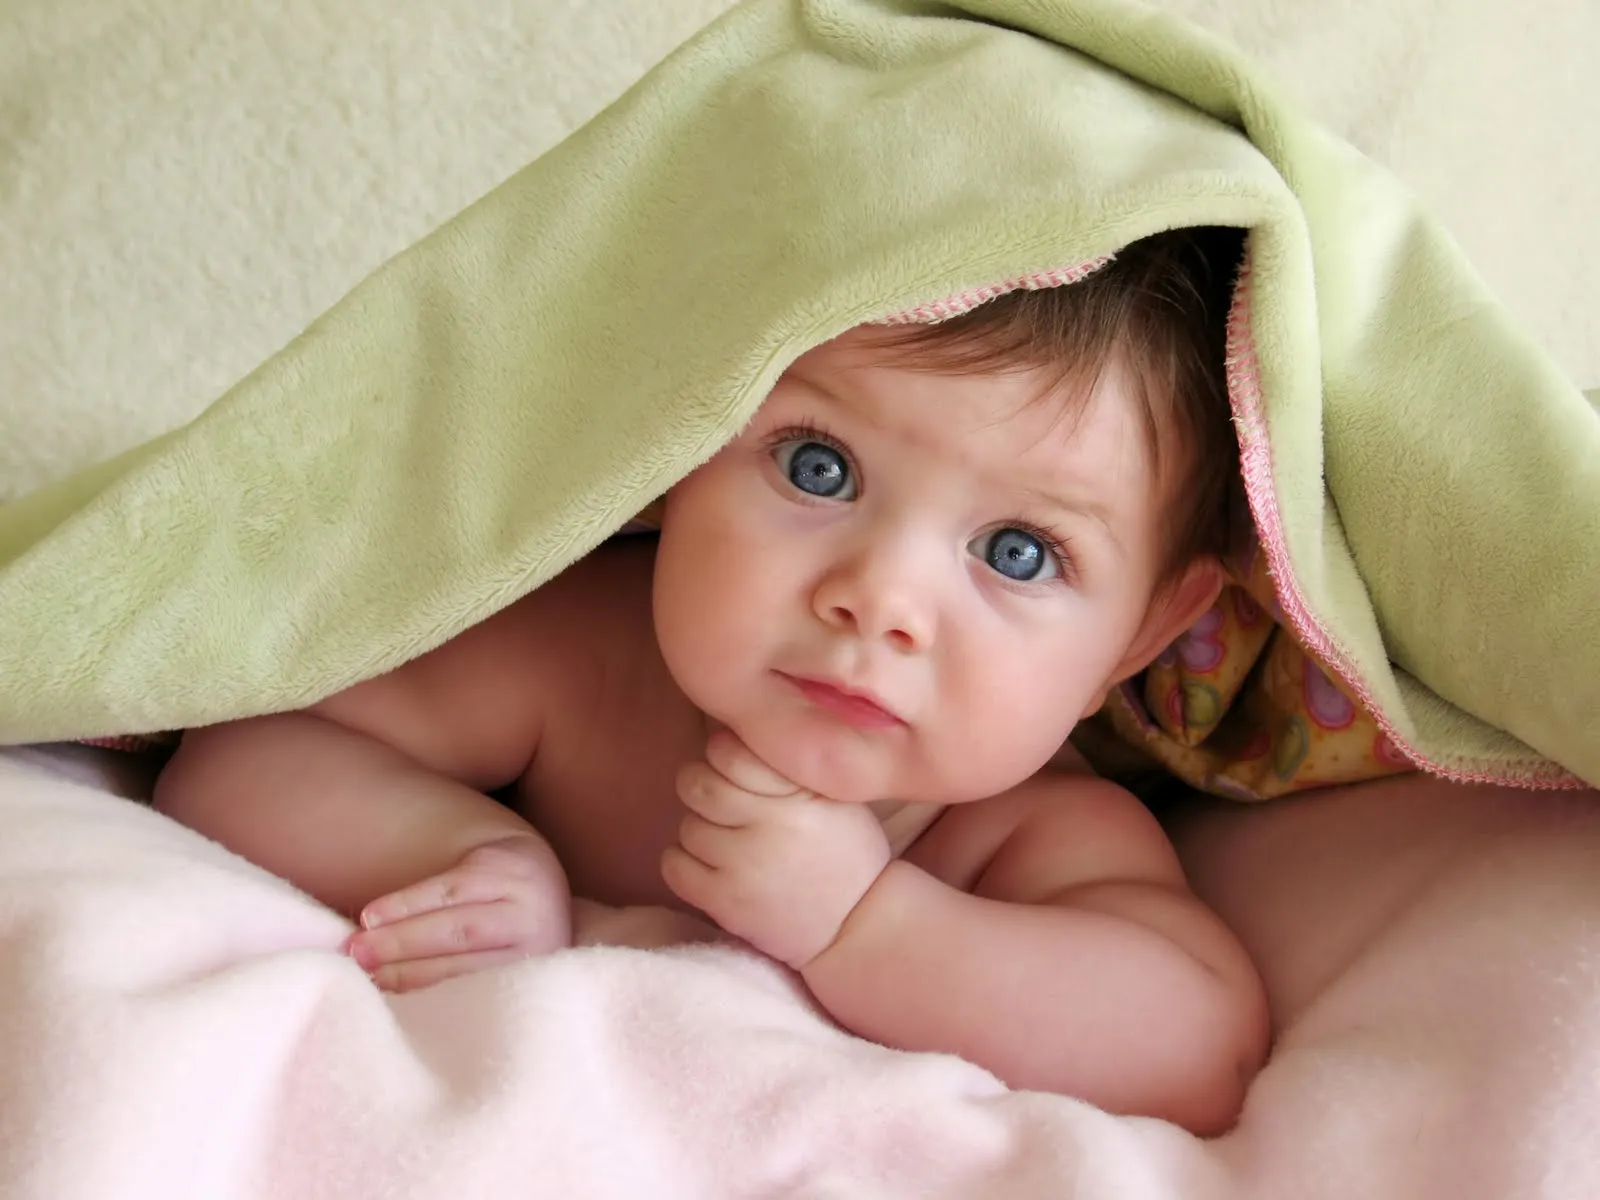 Fotos de las bebés más hermosas del mundo - Imagui